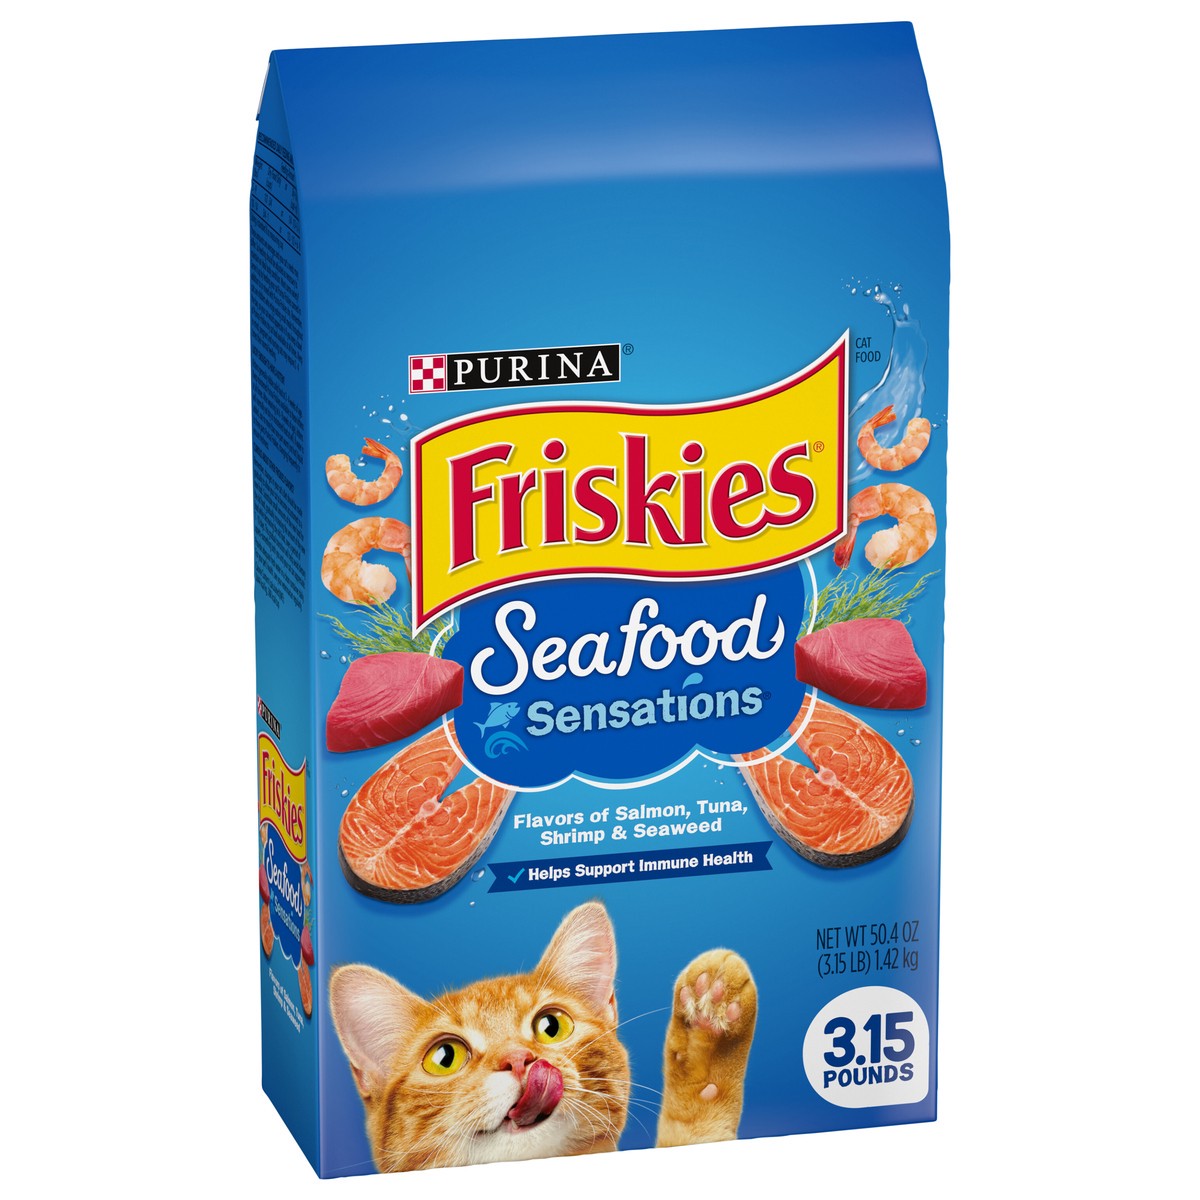 slide 3 of 9, Friskies Purina Friskies Seafood Sensations with Flavors of Salmon, Tuna, Shrimp & Seaweed Adult Complete & Balanced Dry Cat Food - 3.15lbs, 3.15 lb